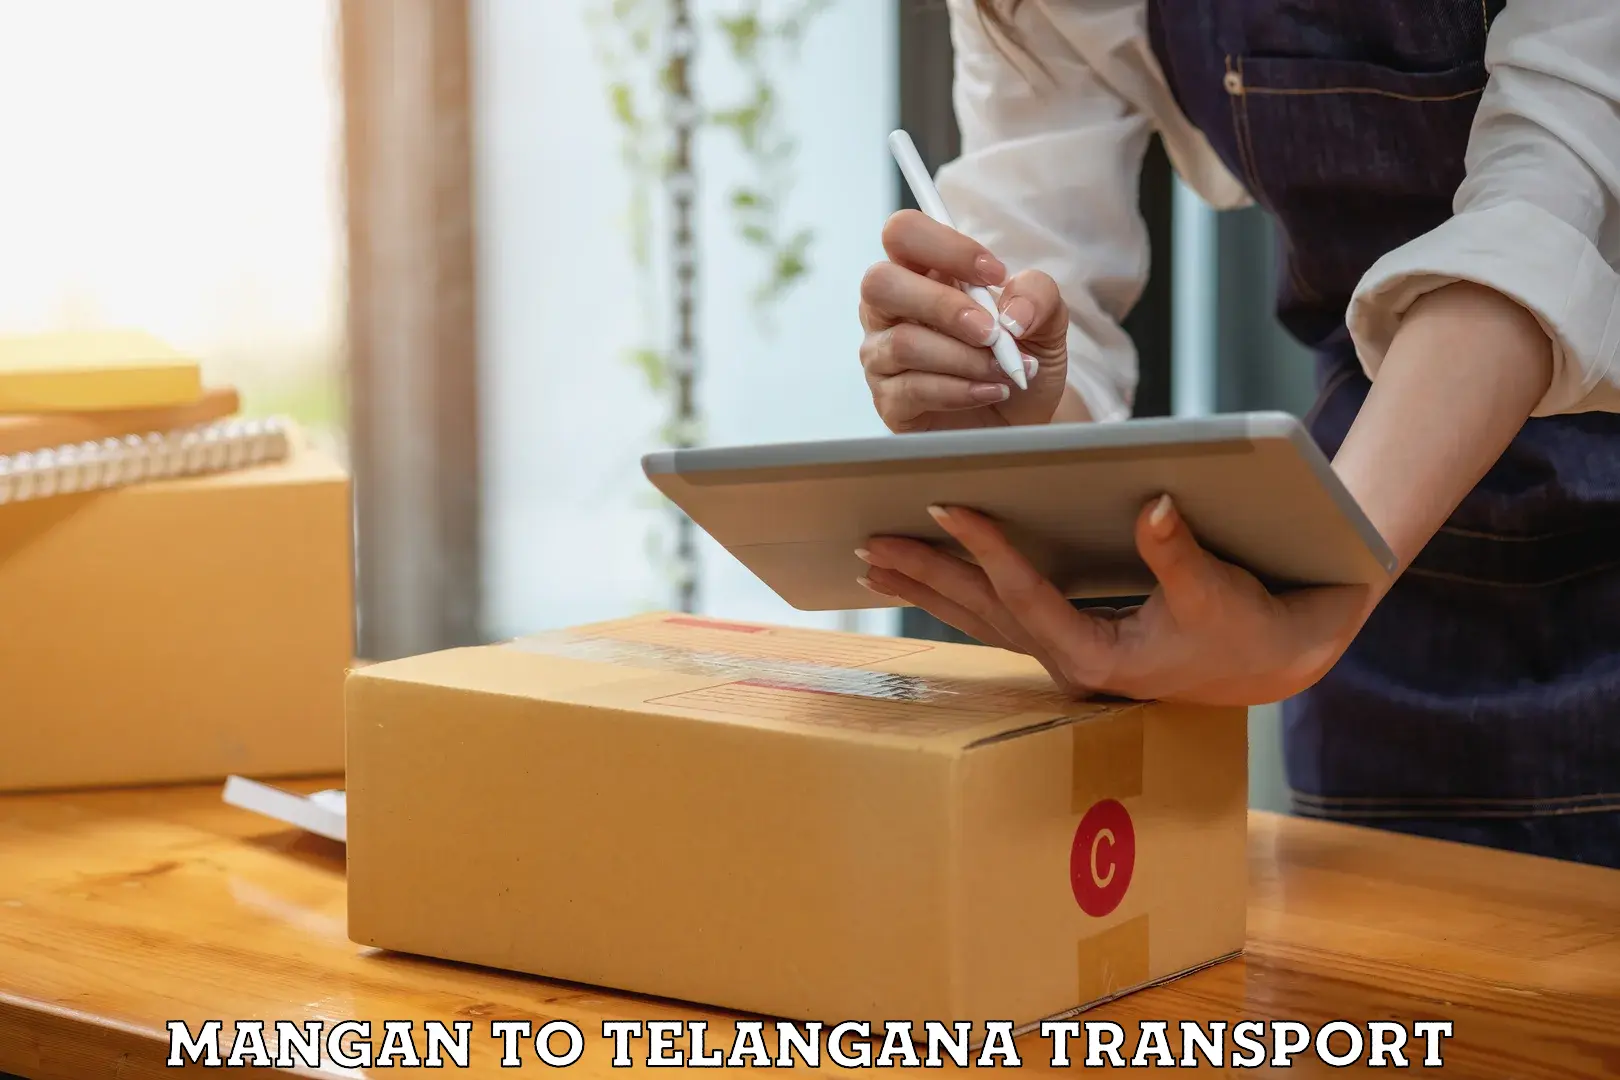 Online transport service Mangan to Odela